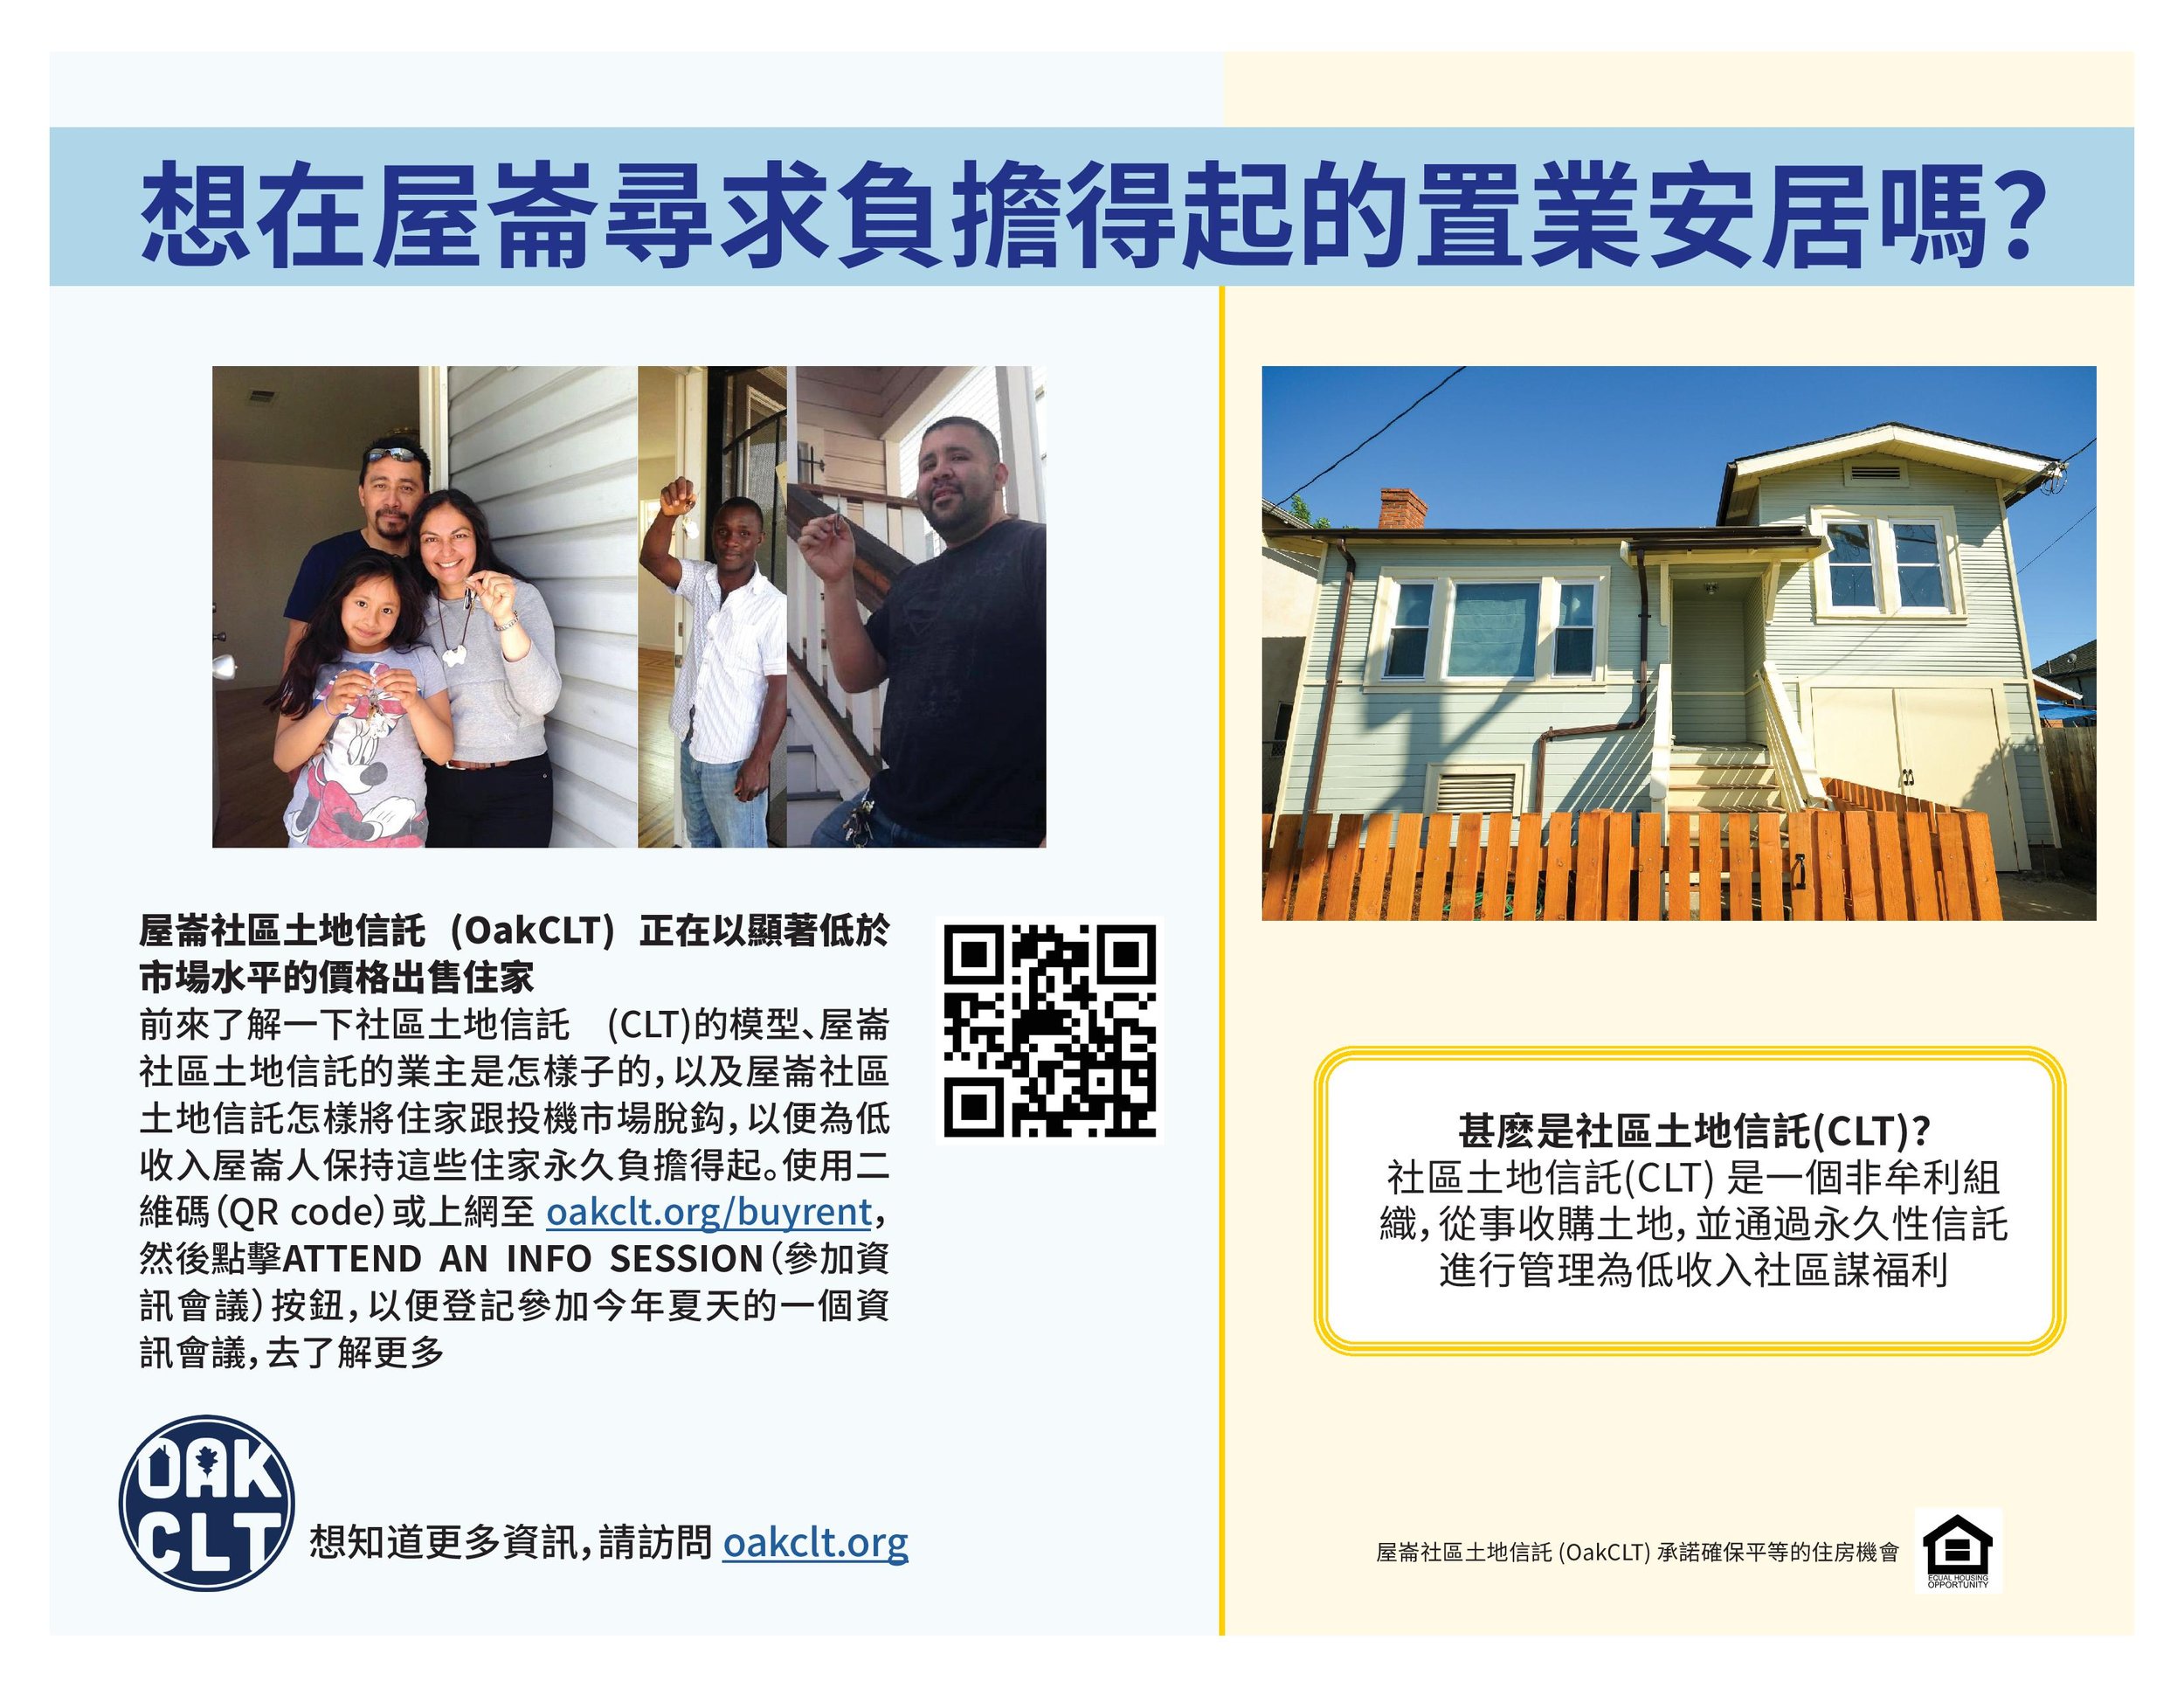 CLT Homebuying Flyer 5-11-22 CH.jpg